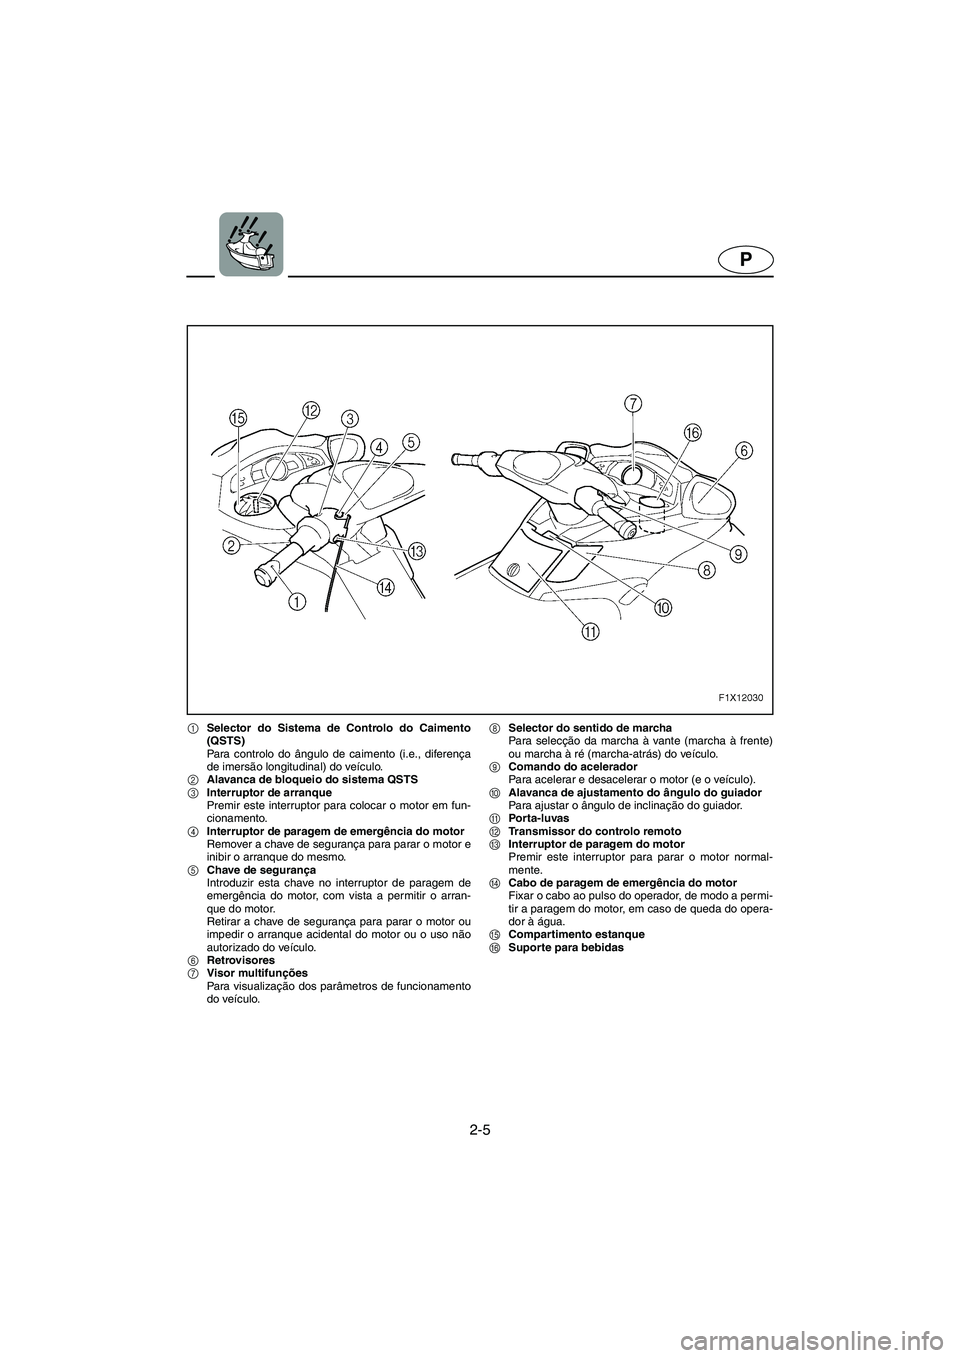 YAMAHA FX HO 2006  Manual de utilização (in Portuguese) 2-5
P
1Selector do Sistema de Controlo do Caimento
(QSTS)
Para controlo do ângulo de caimento (i.e., diferença
de imersão longitudinal) do veículo. 
2Alavanca de bloqueio do sistema QSTS
3Interrup